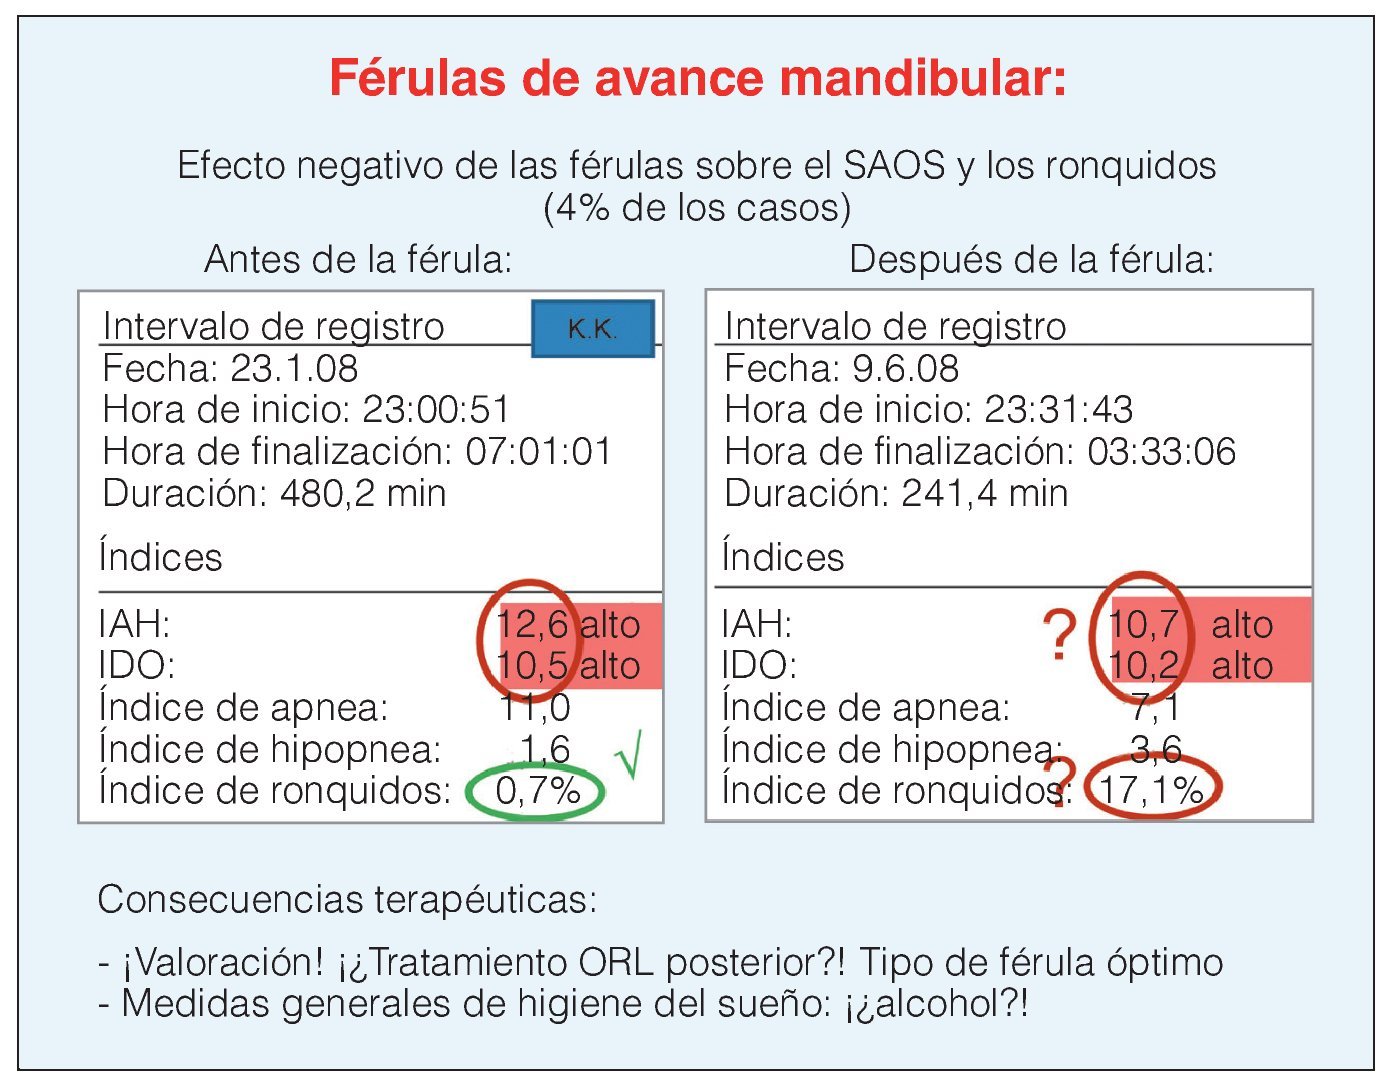 Férula Anti-Ronquidos, tratamiento de la apnea del sueño en Jaén - Clínica  Dental Jaén